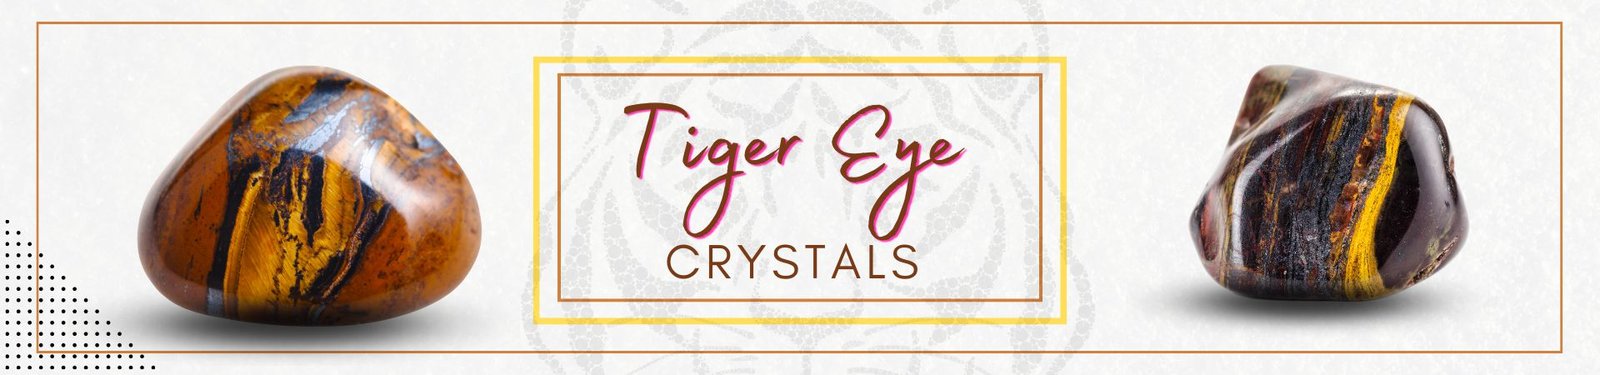 Tiger Eye _compressed